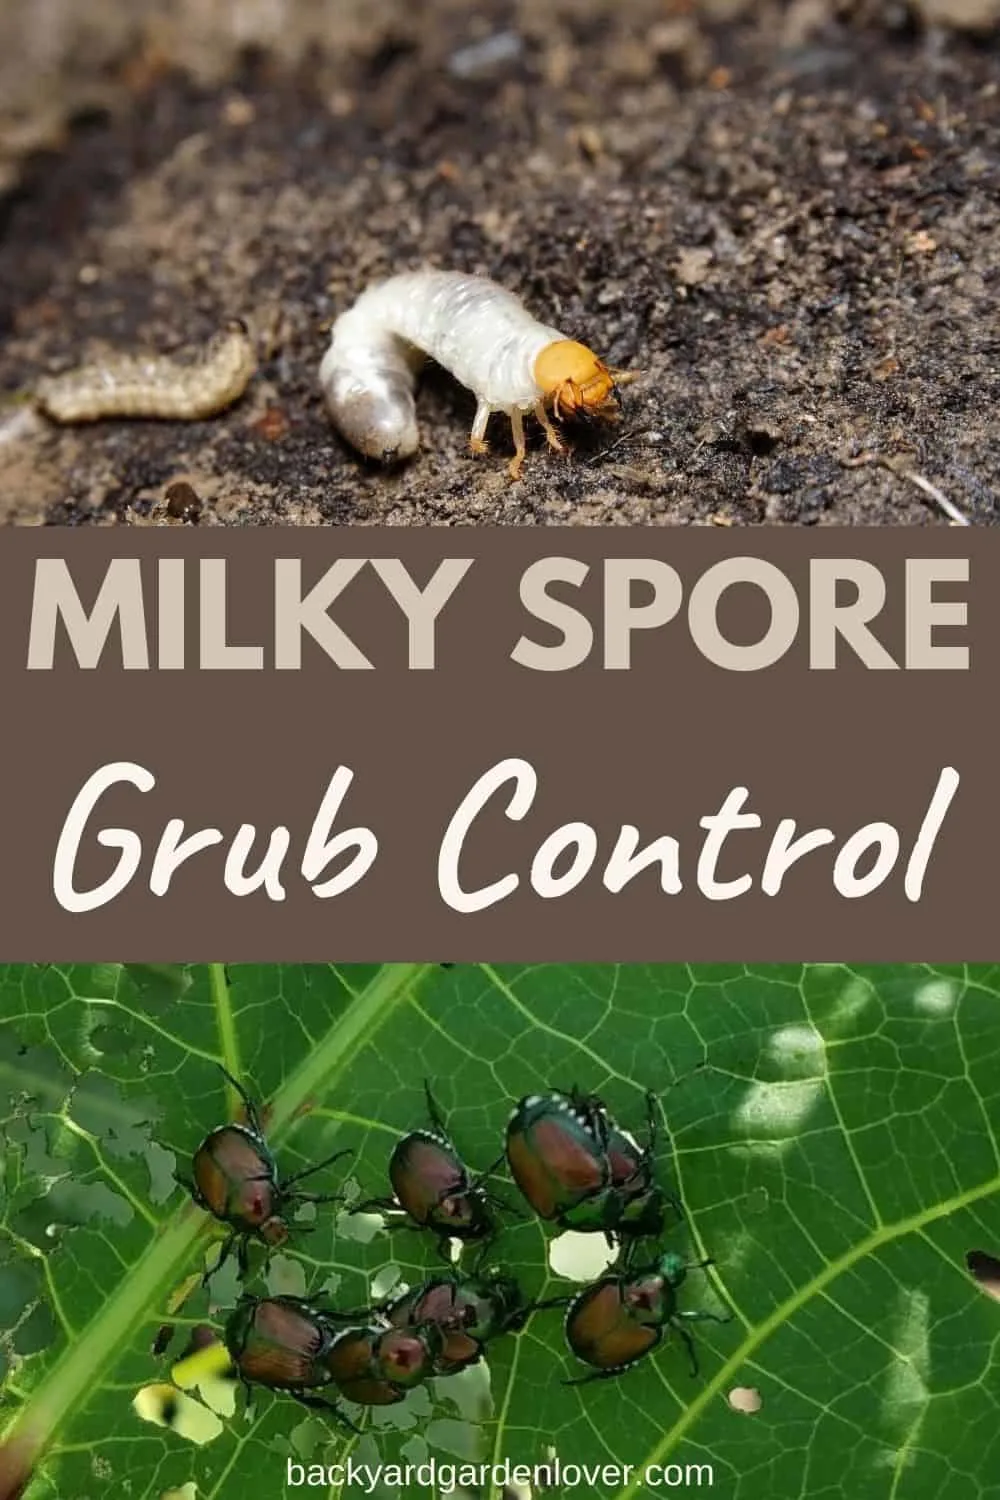 Milky spore grub control for your garden